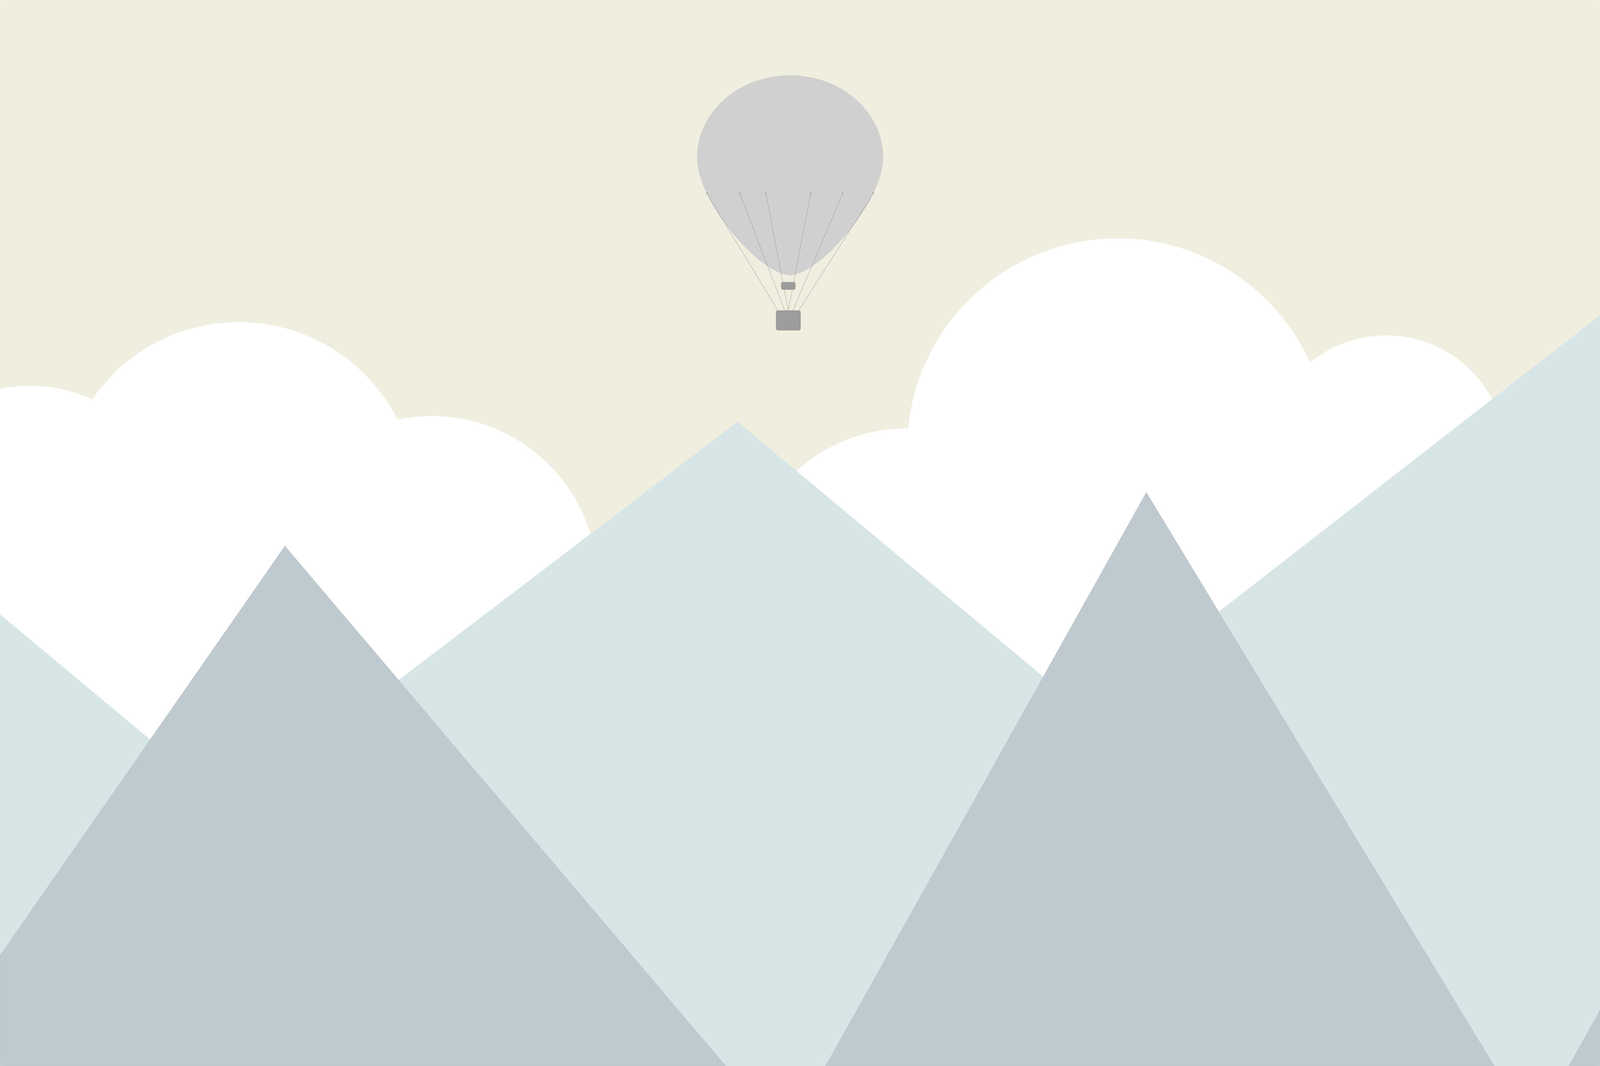             Leinwandbild Kinderzimmer Berge mit Wolken und Heißluftballon – 0,90 m x 0,60 m
        